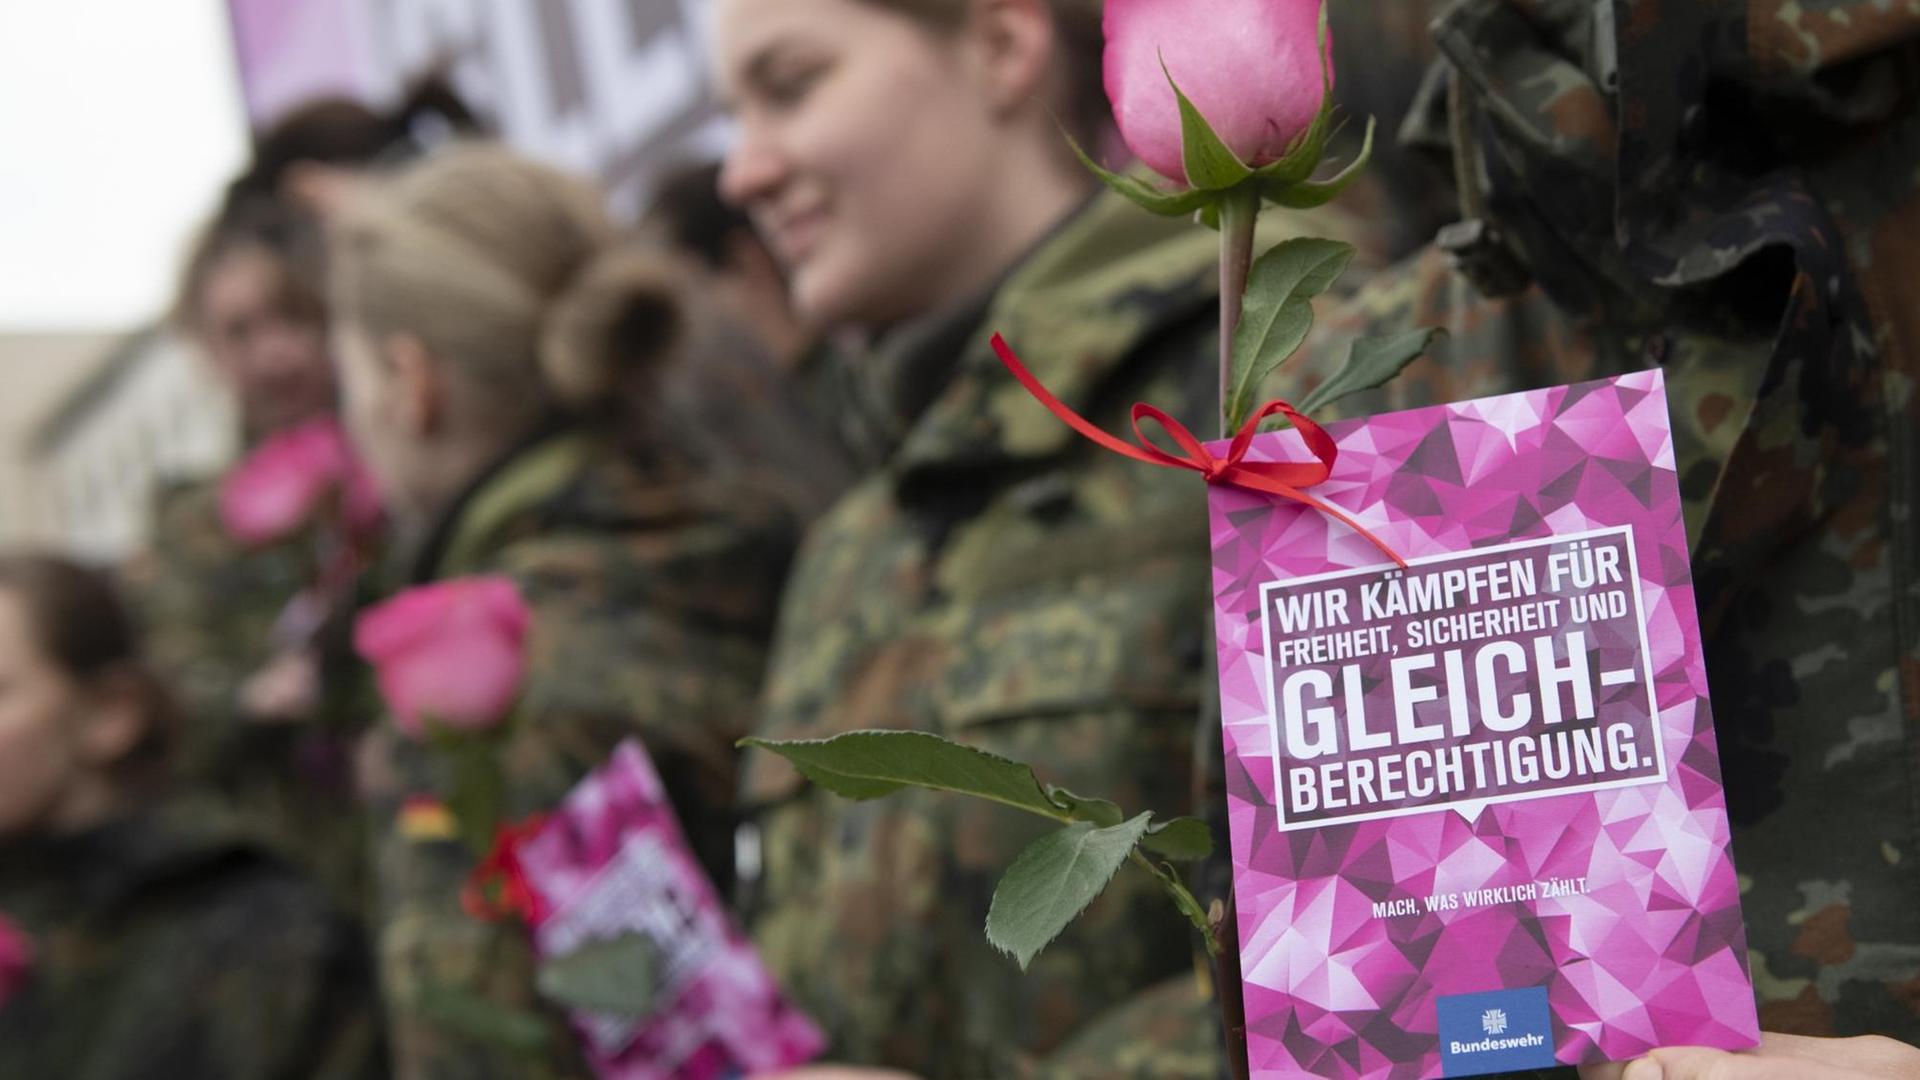 Eine Bundeswehrsoldatin ist schemenhaft hinter einem Flyer zu erkennen, auf dem steht: "Wir kämpfen für Freiheit, Sicherheit und Gleichberechtigung."